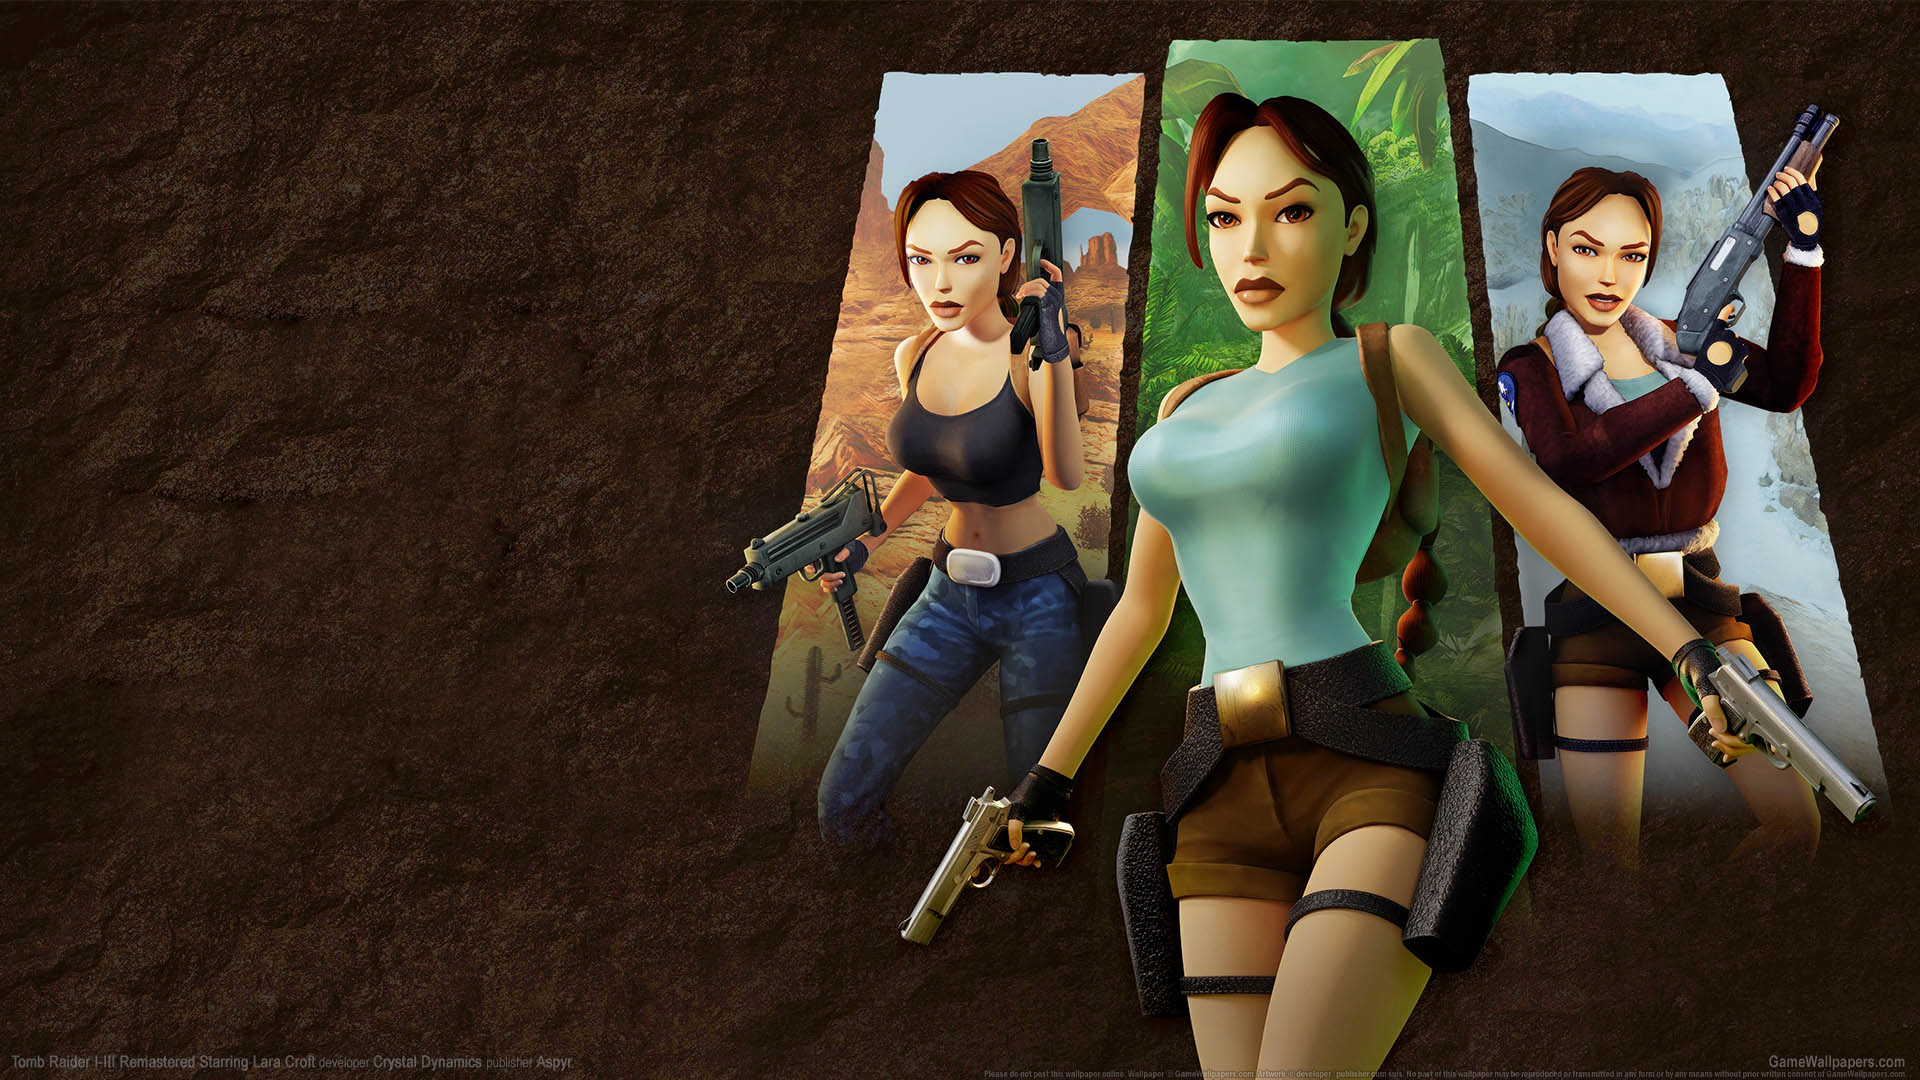 Tomb Raider I-III Remastered Starring Lara Croft fond d'cran 01 1920x1080